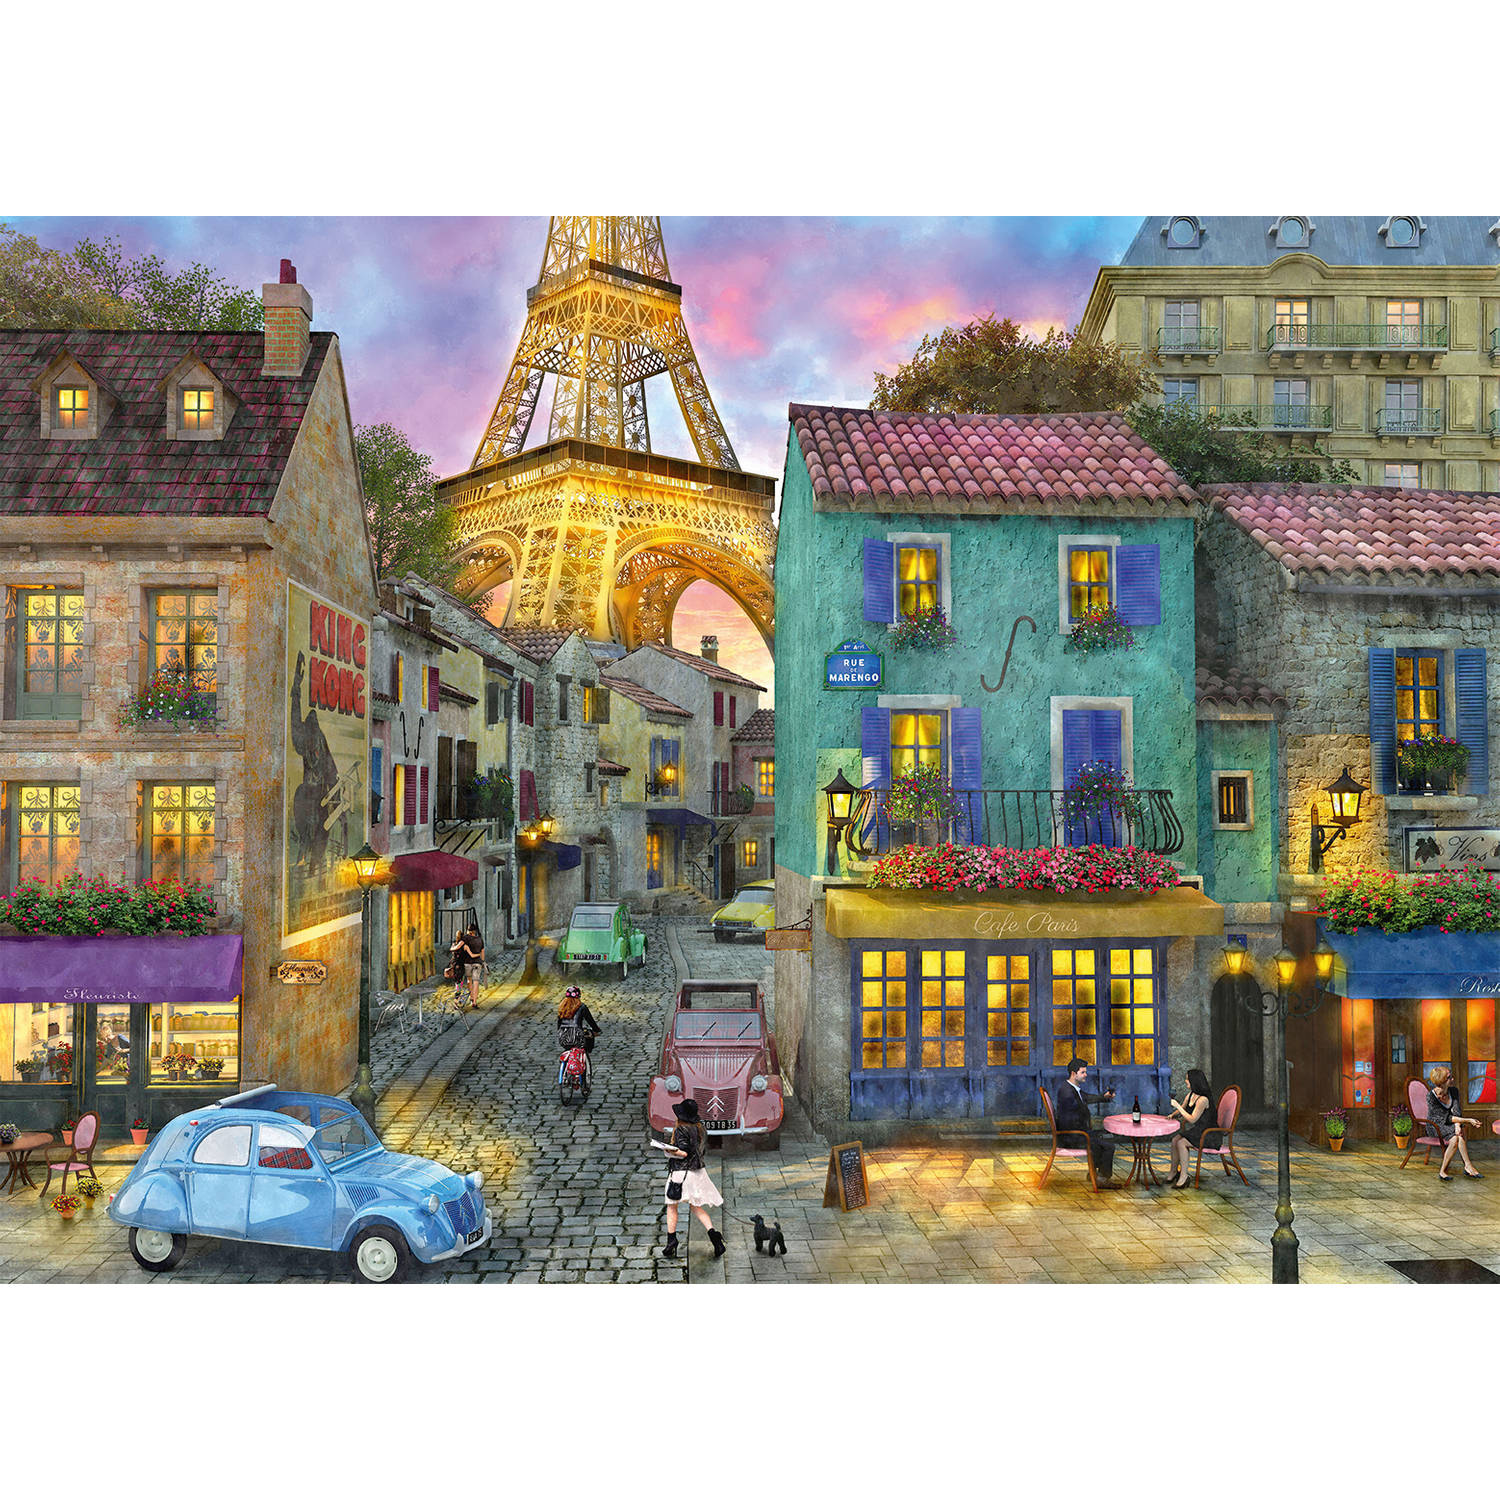 Rebo legpuzzel - 1000 st - Paris Streets - Premium Quality